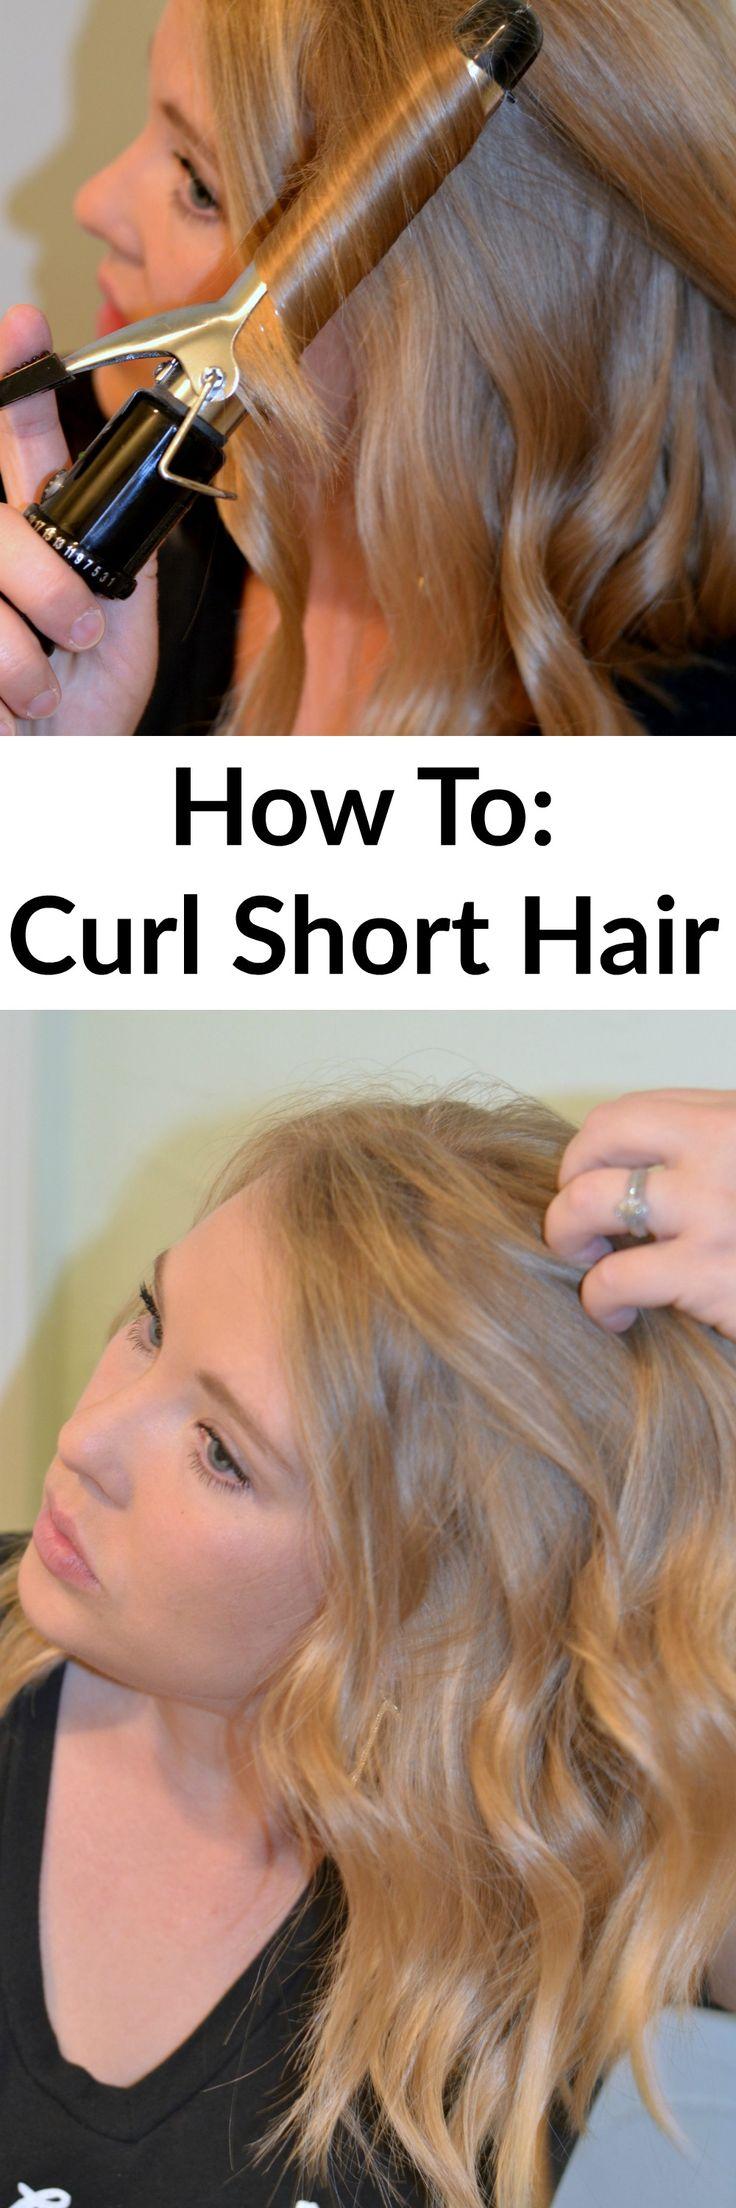 زفاف - How To: Curl Short Hair